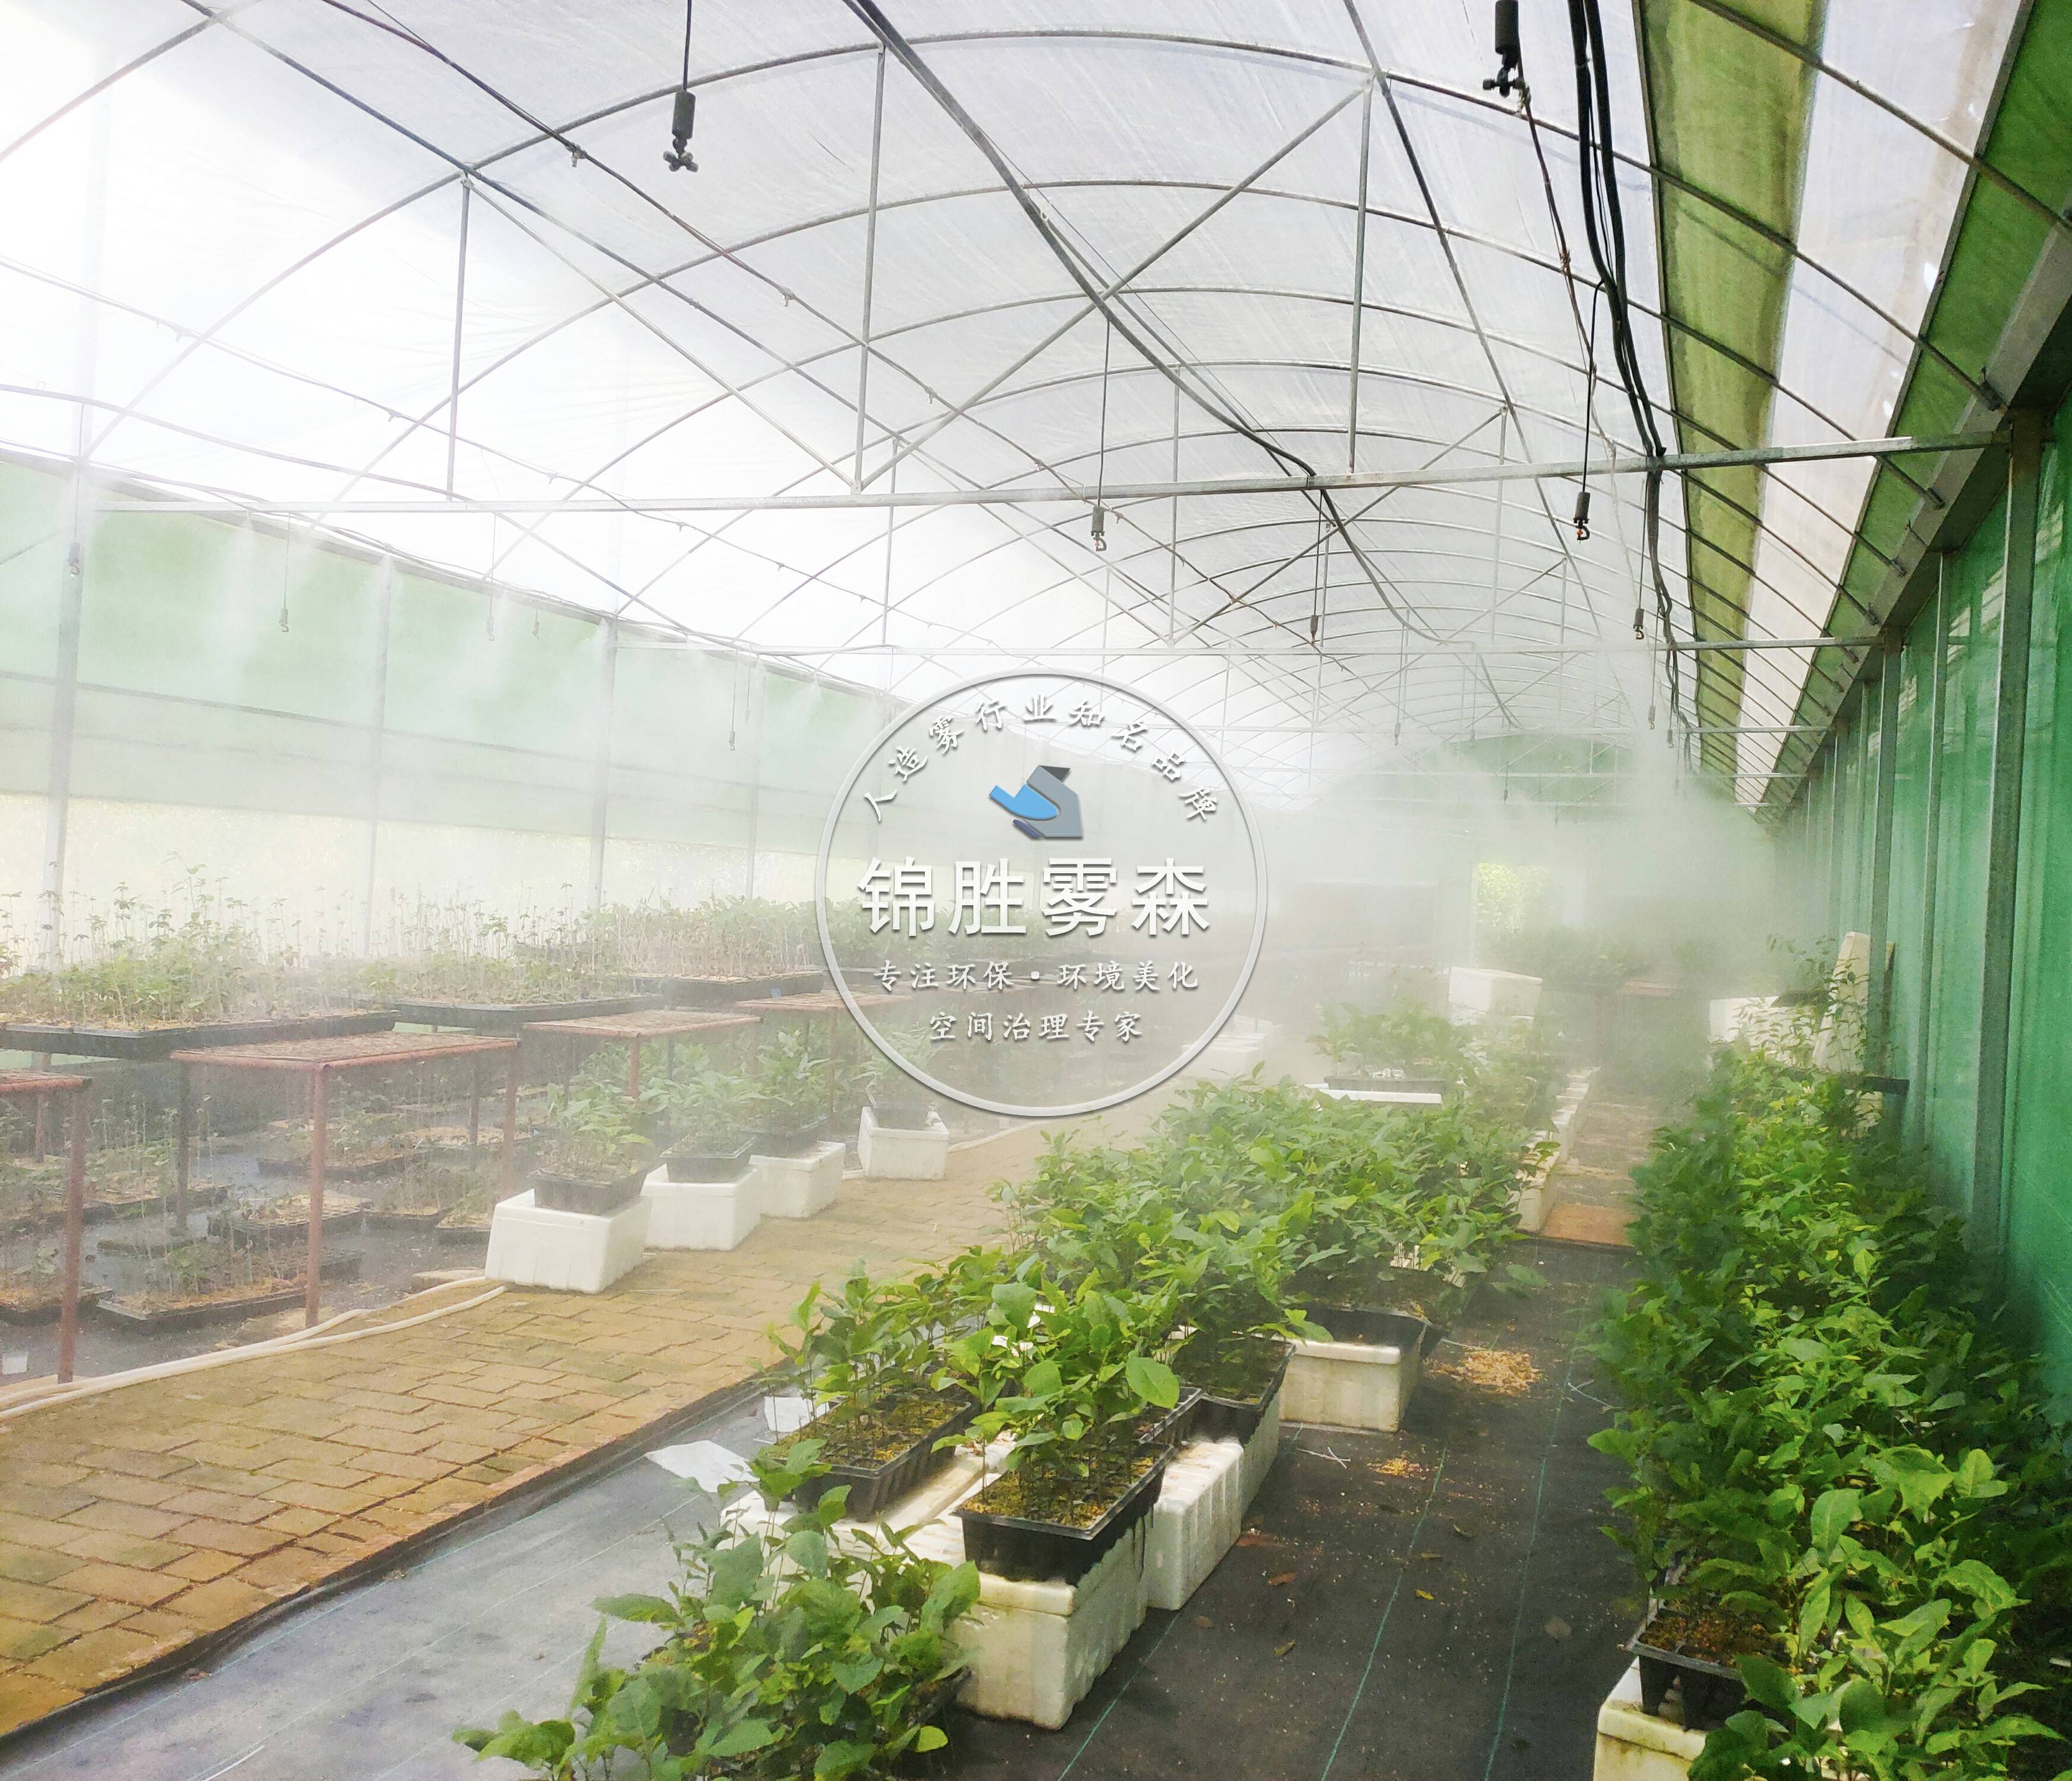 大棚温室喷雾降温系统应用,智能浇灌提升种植环境